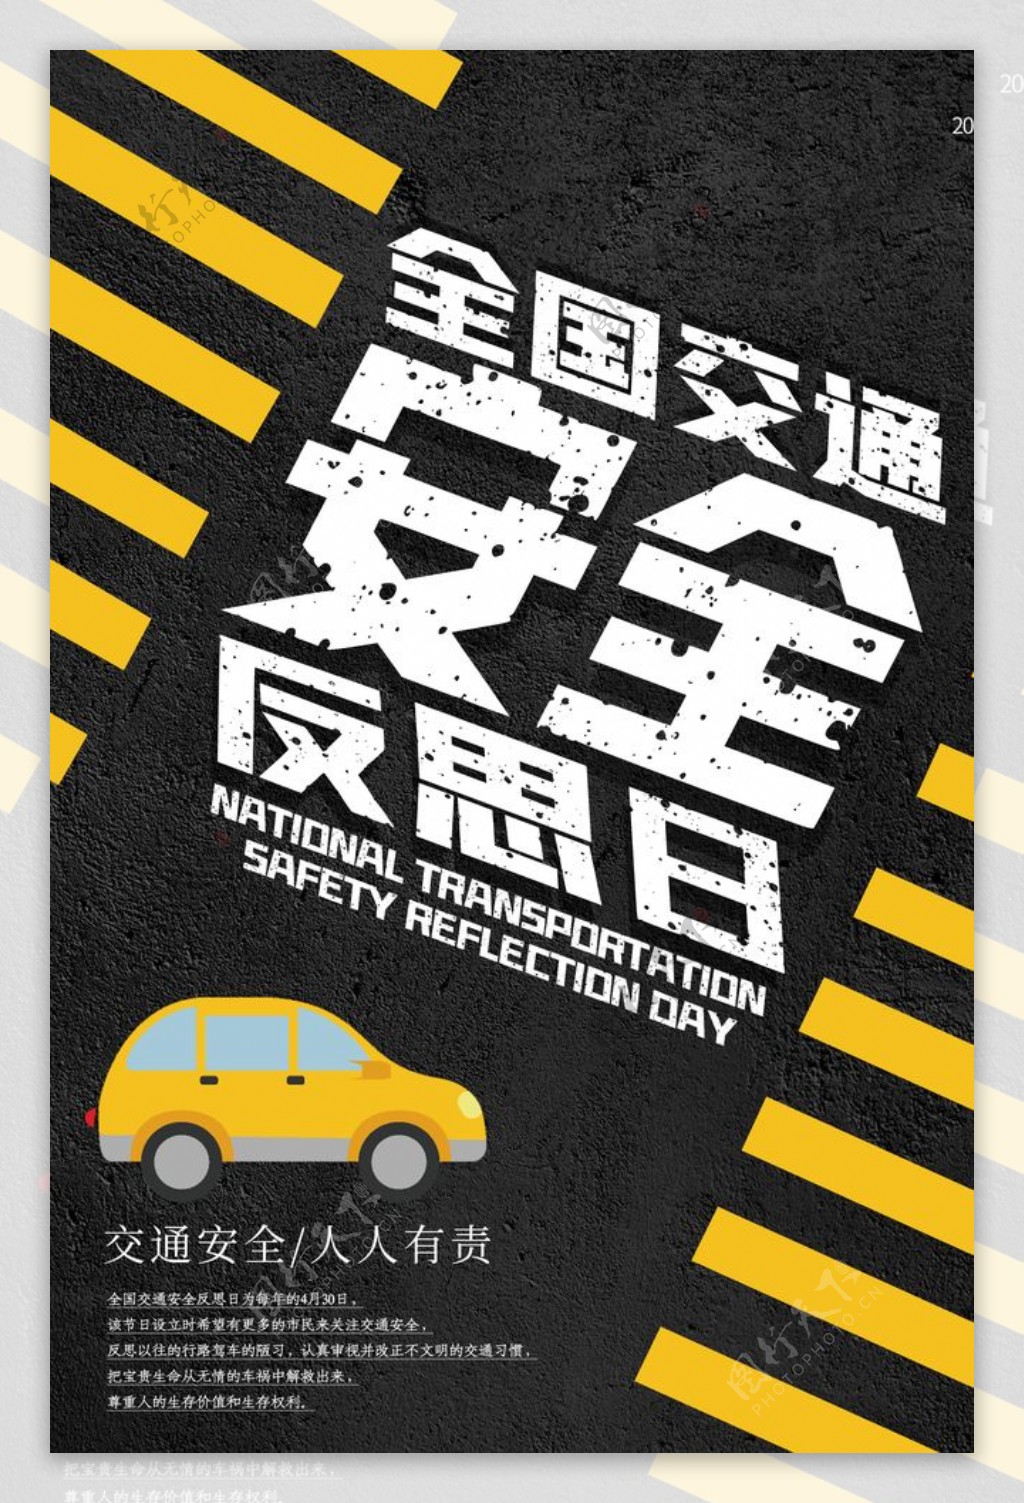 交通安全公益活动宣传海报素材